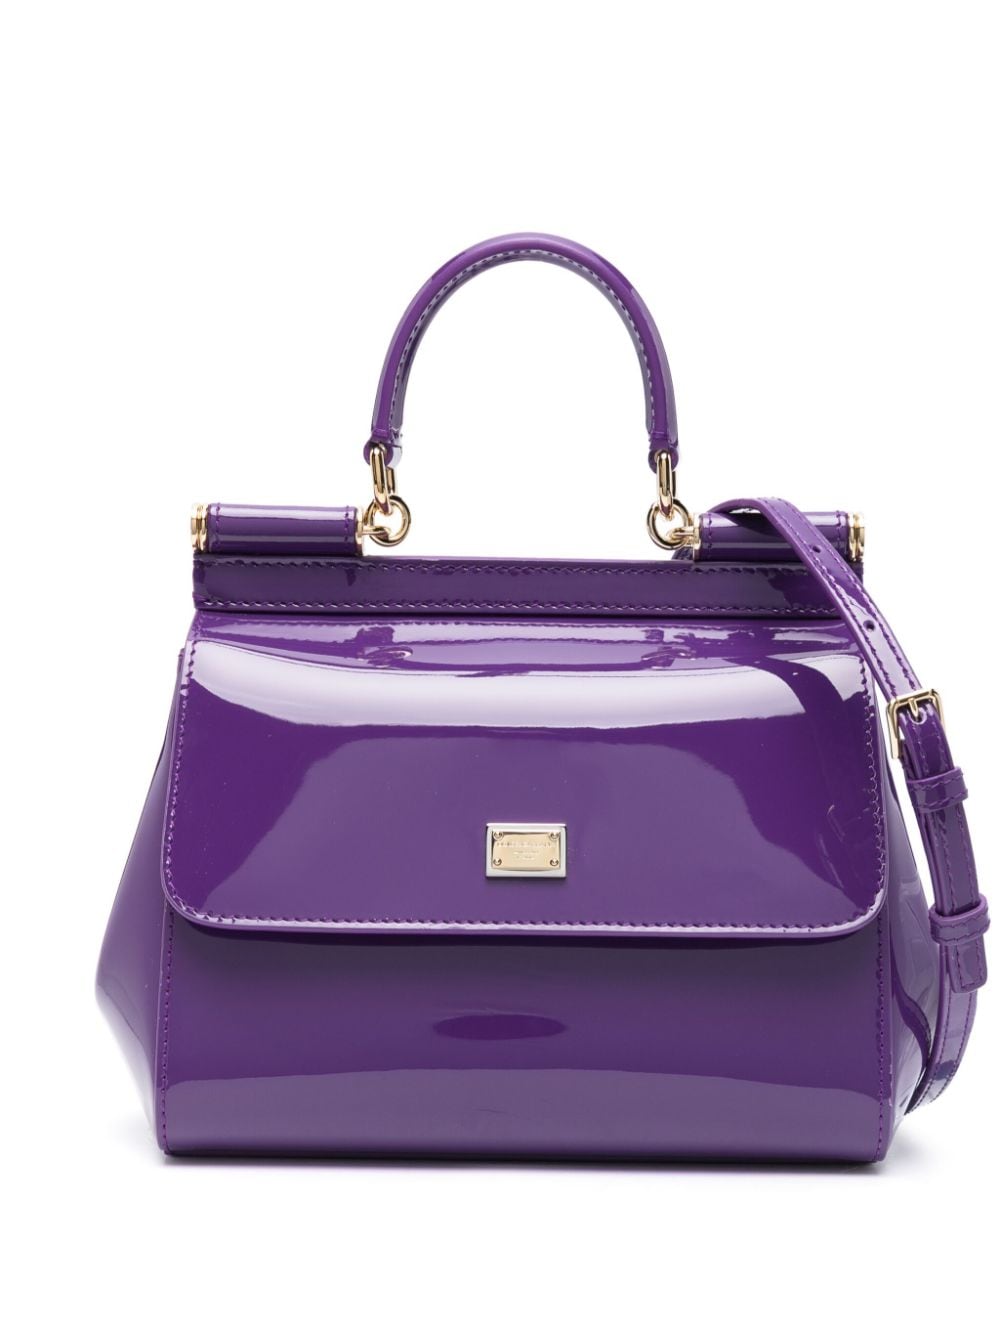 Dolce & Gabbana Mittelgrosse Sicily Handtasche In Violett